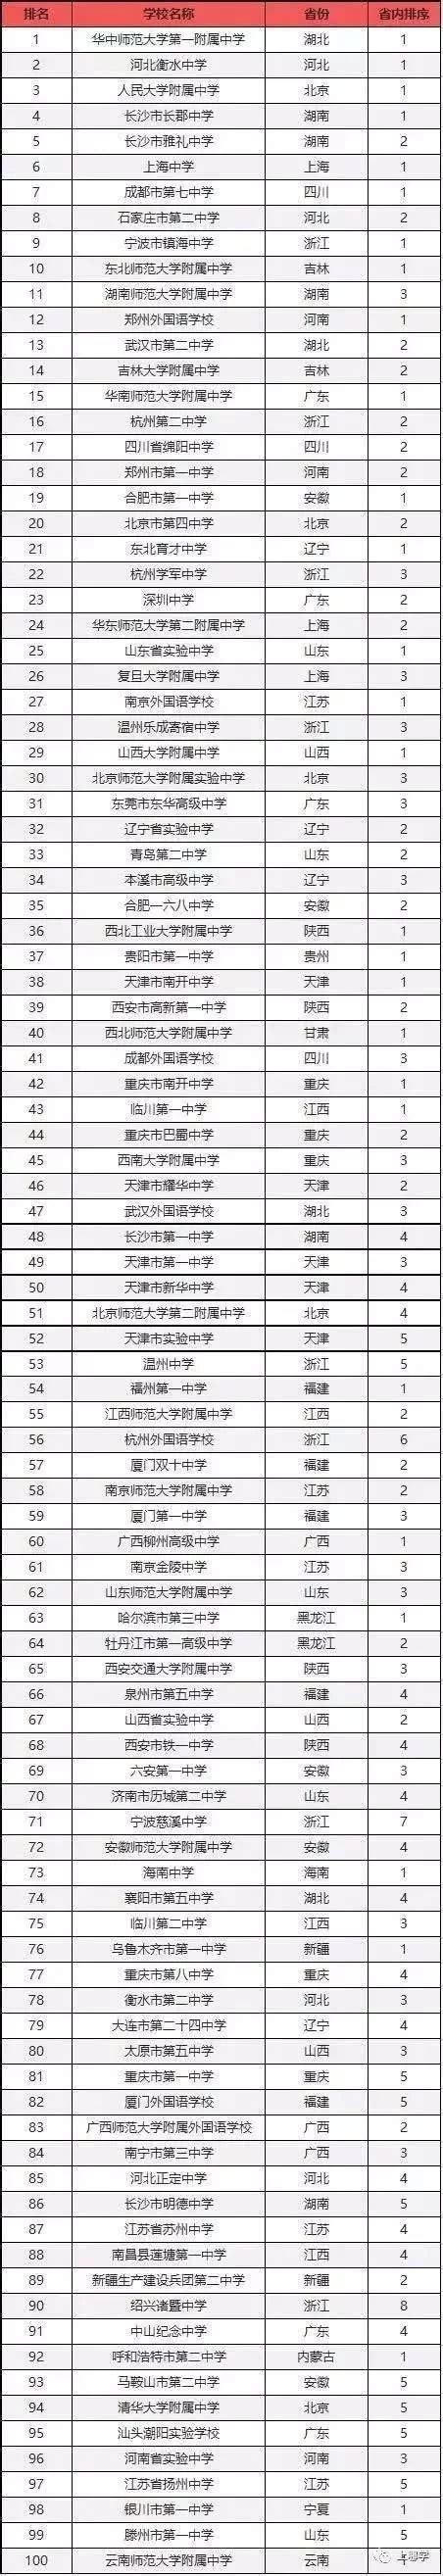 中国高中排名一览表，中国最好的高中学校有哪些？